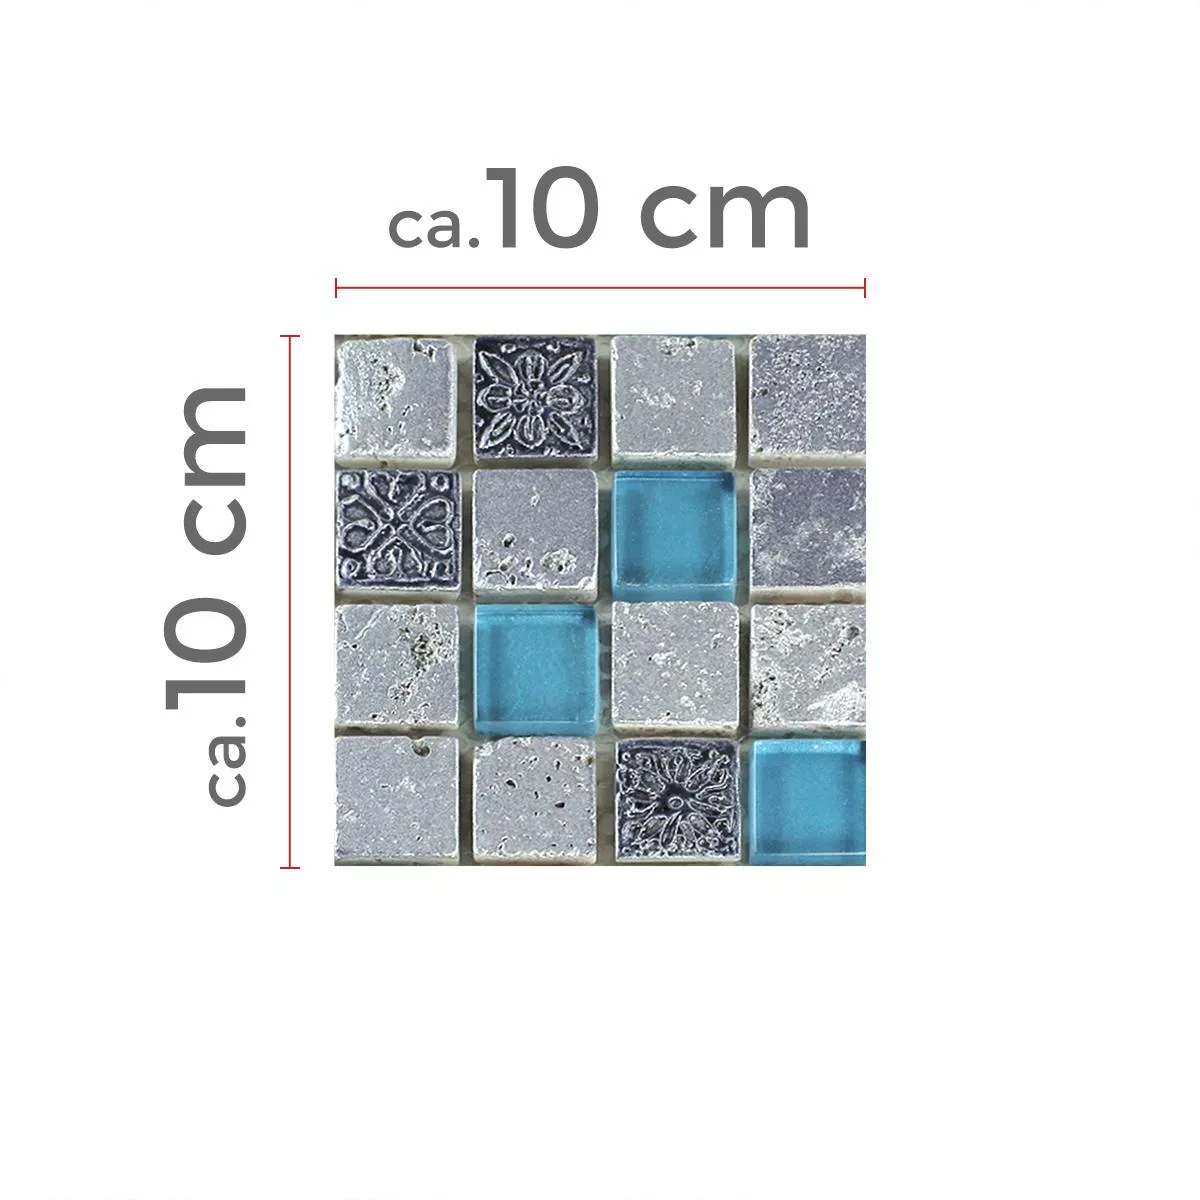 Muster von Mosaikfliesen Glas Resin Stein Mix Blau Silber